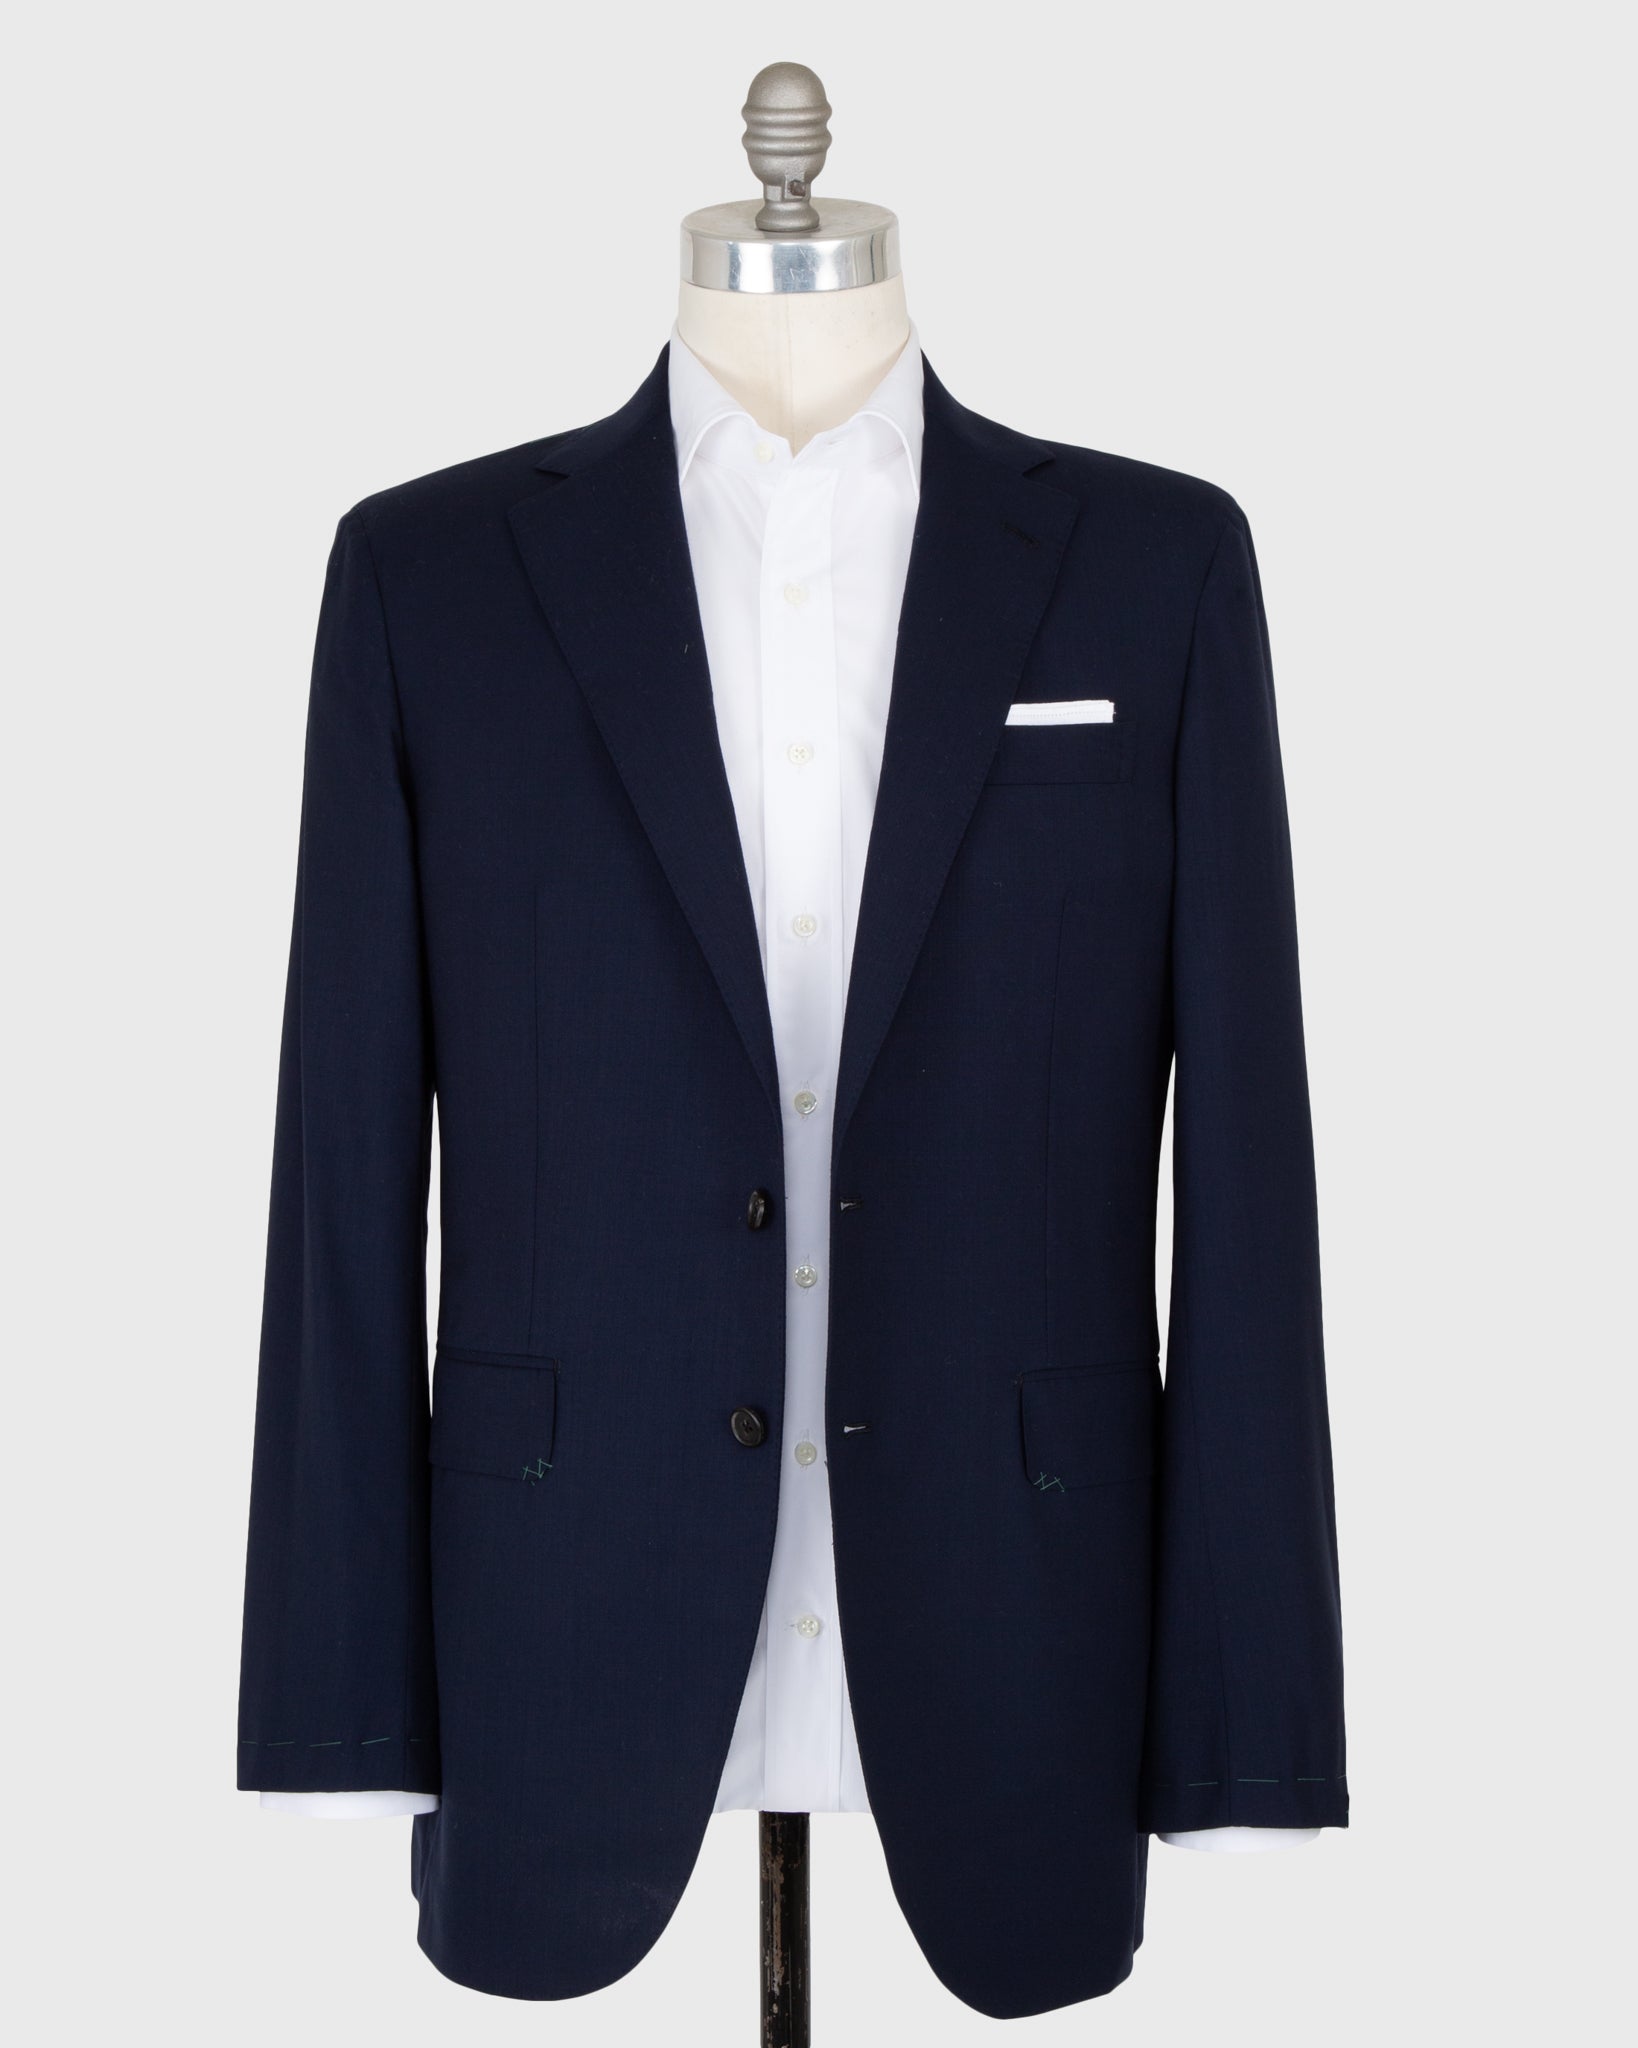 Kincaid No. 4 Suit in Navy Escorial Wool Plainweave